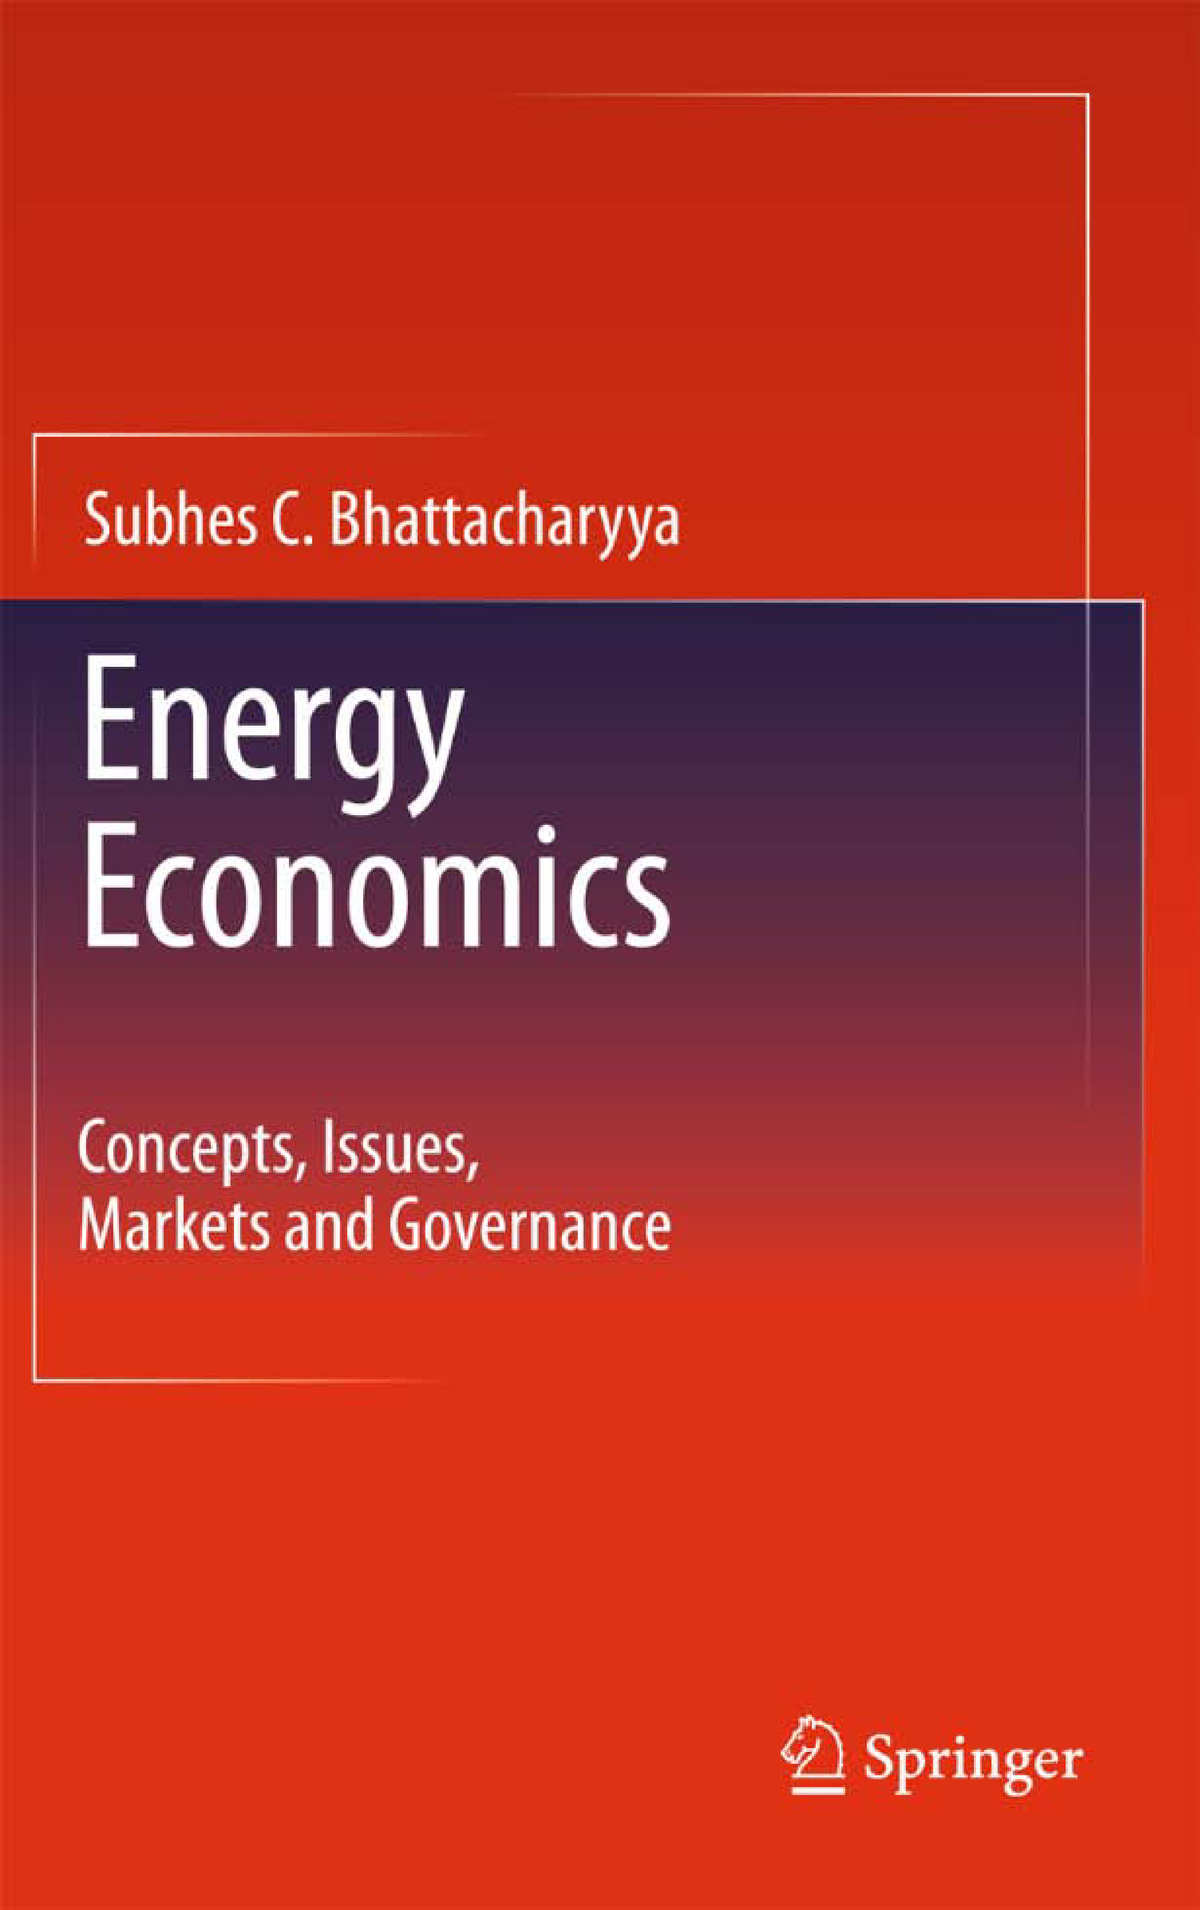 phd research topics in energy economics